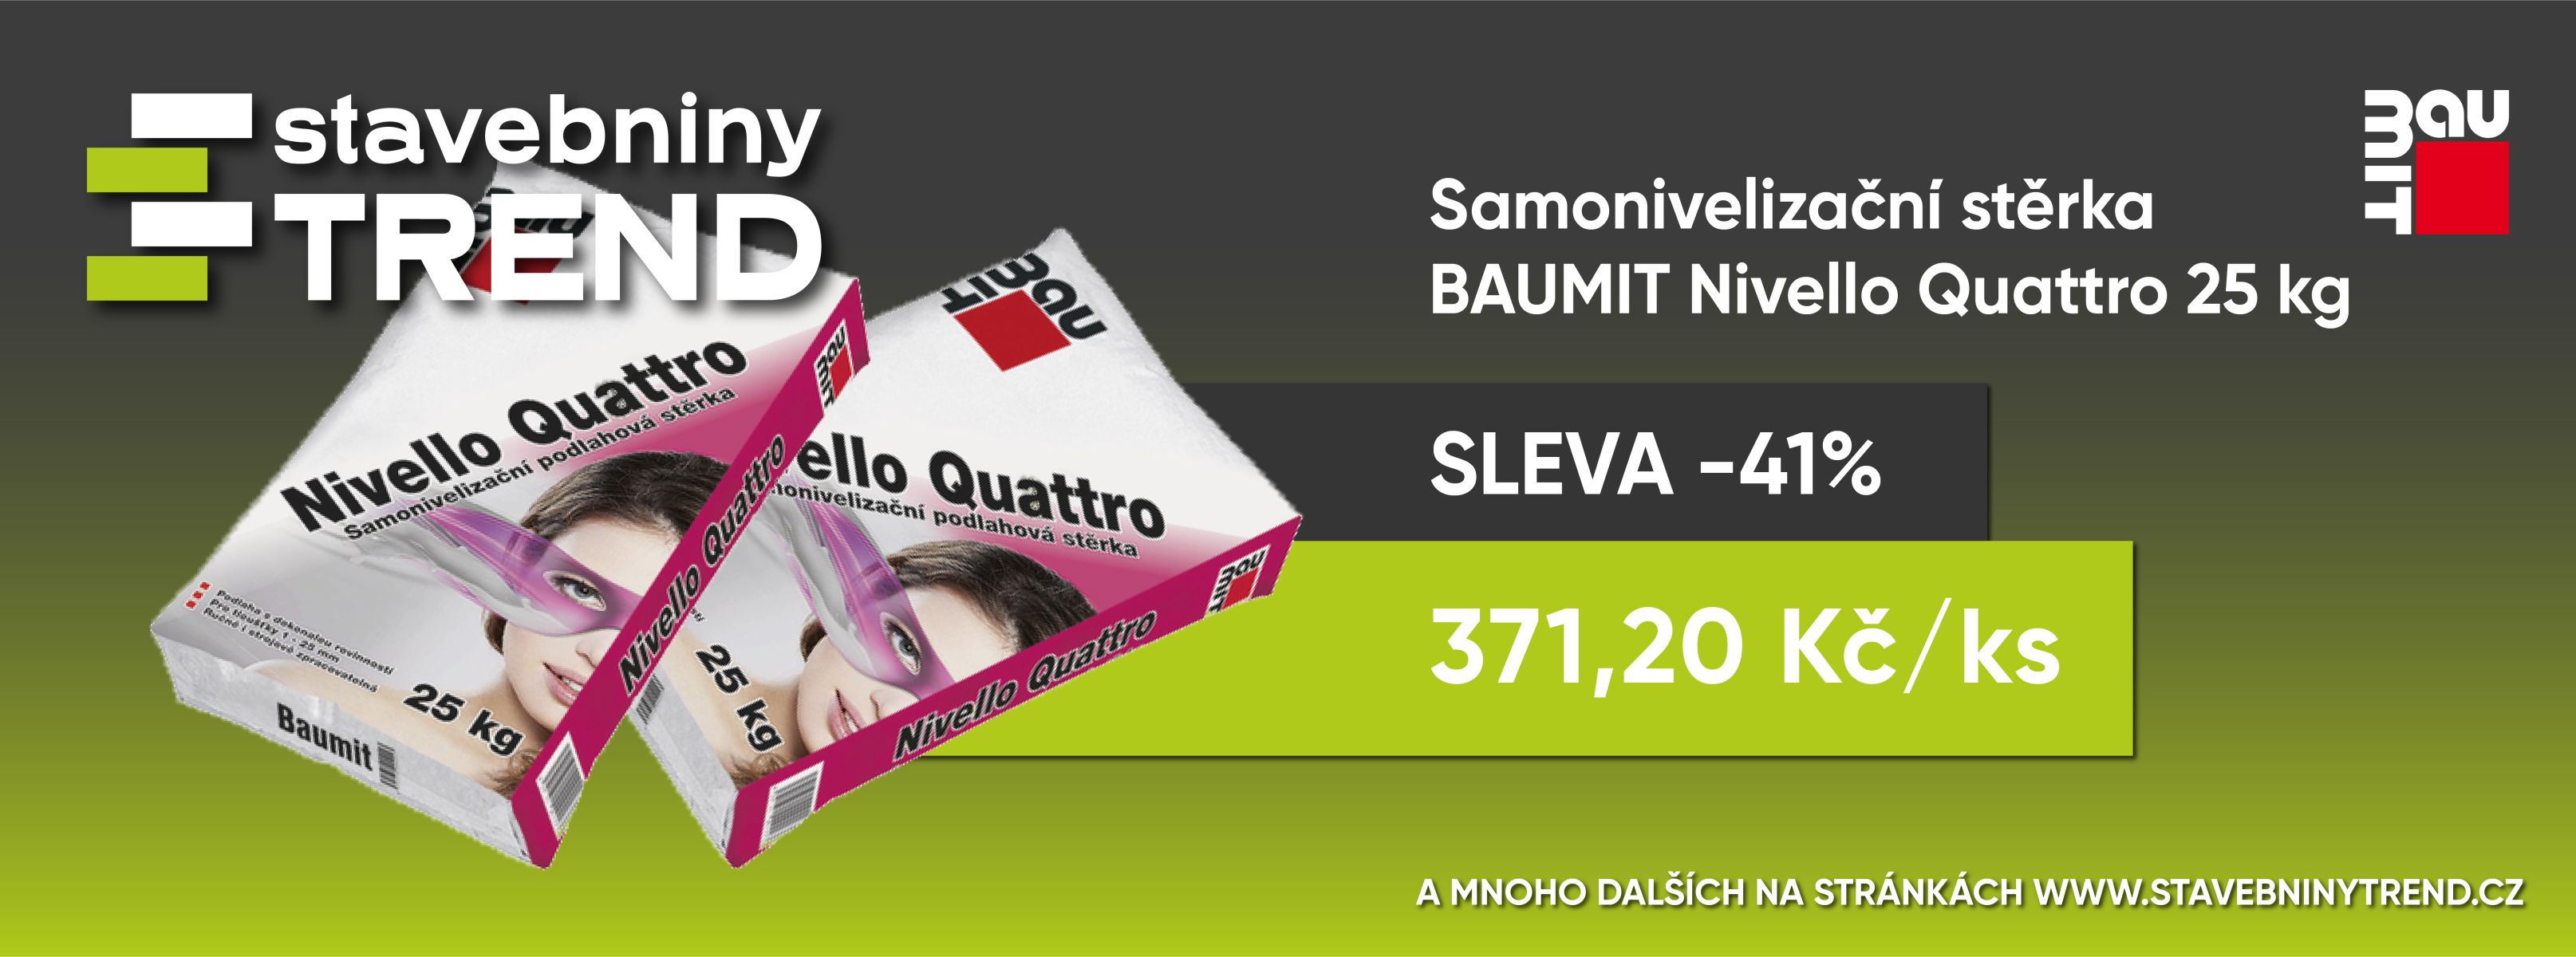 BAUMIT Nivello Quattro samonivelizační podlahová stěrka